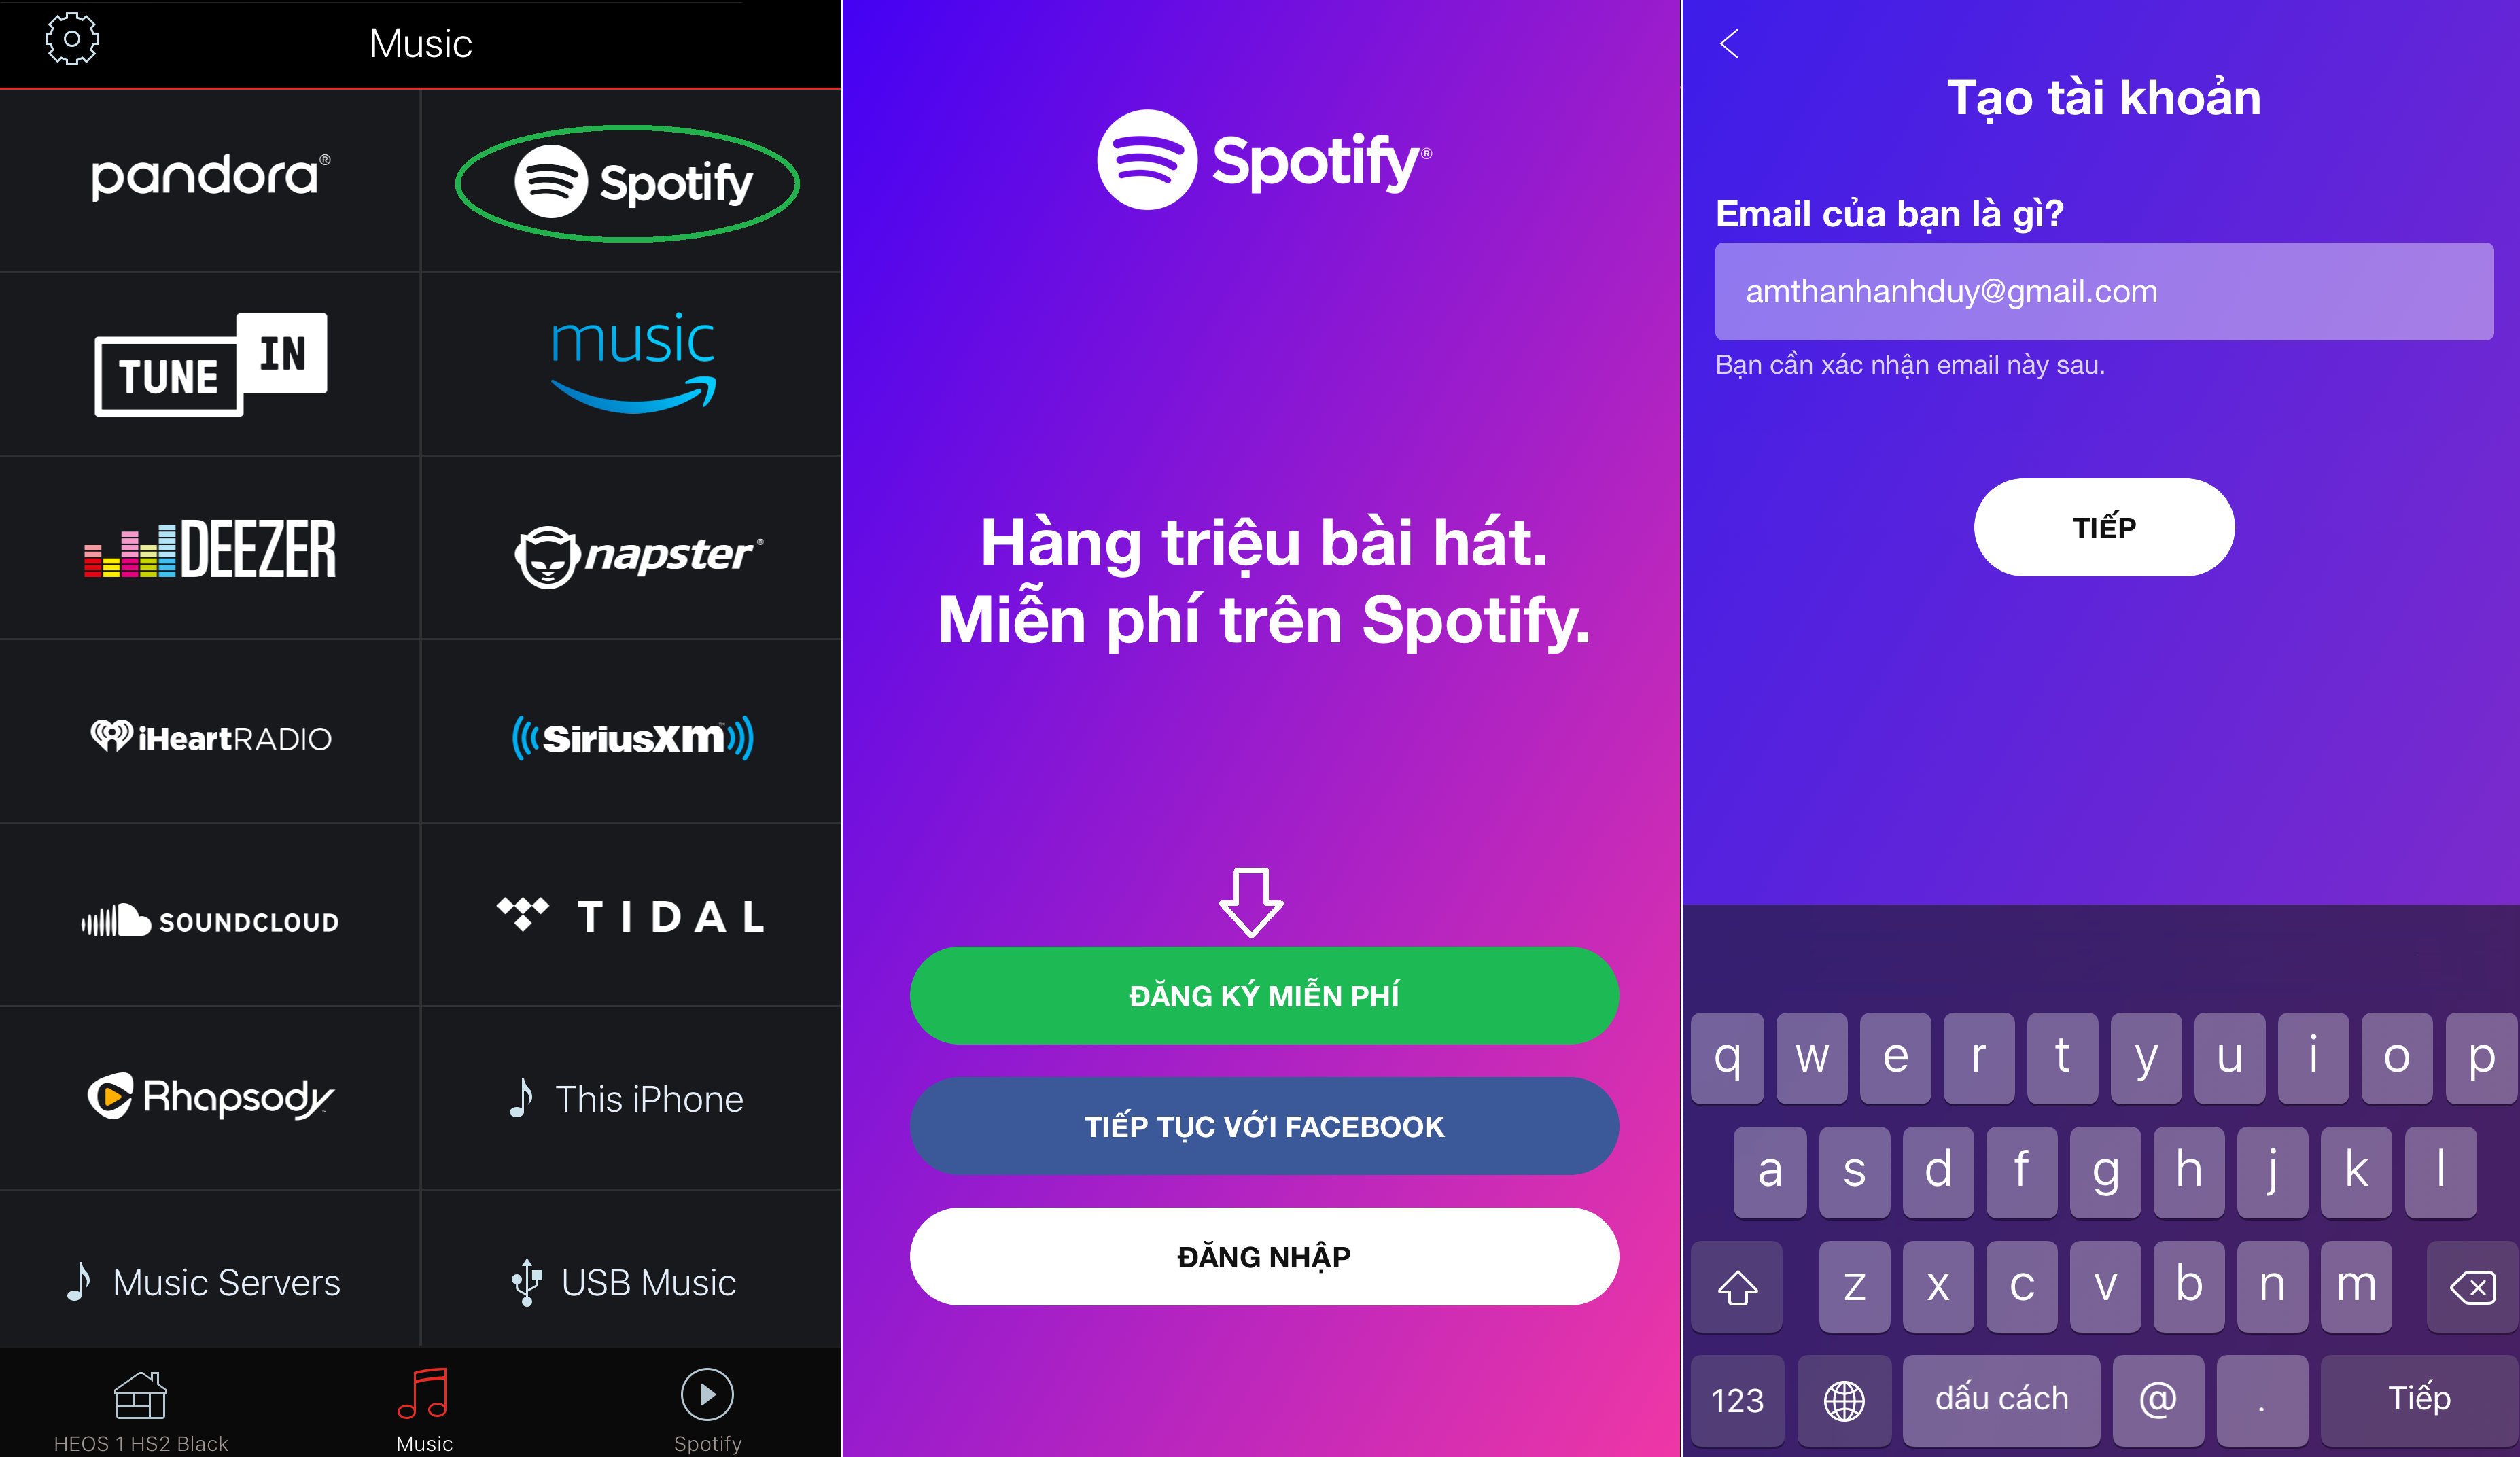 HEOS chơi nhạc Spotify miễn phí